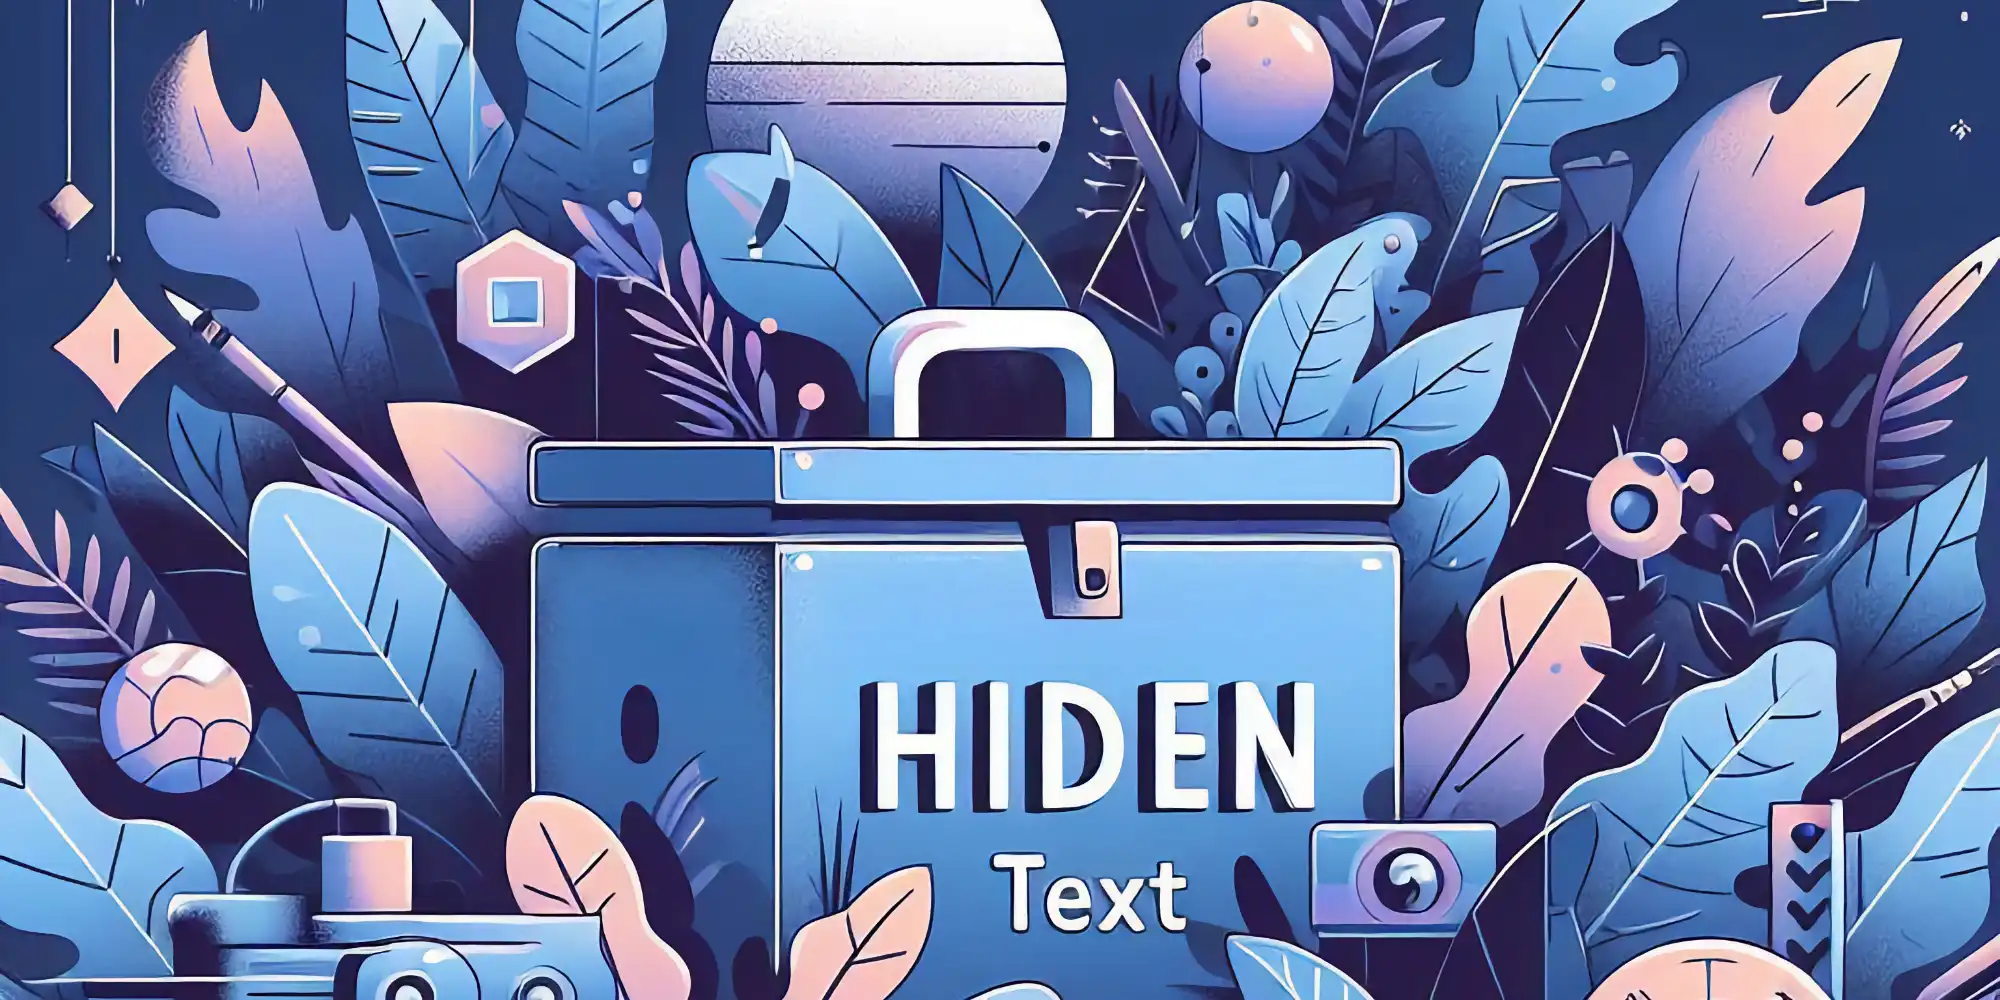 一个蓝色的箱子，周围环绕着各种抽象和几何形状的植物和元素。箱子上写着“HIDEN Text”。